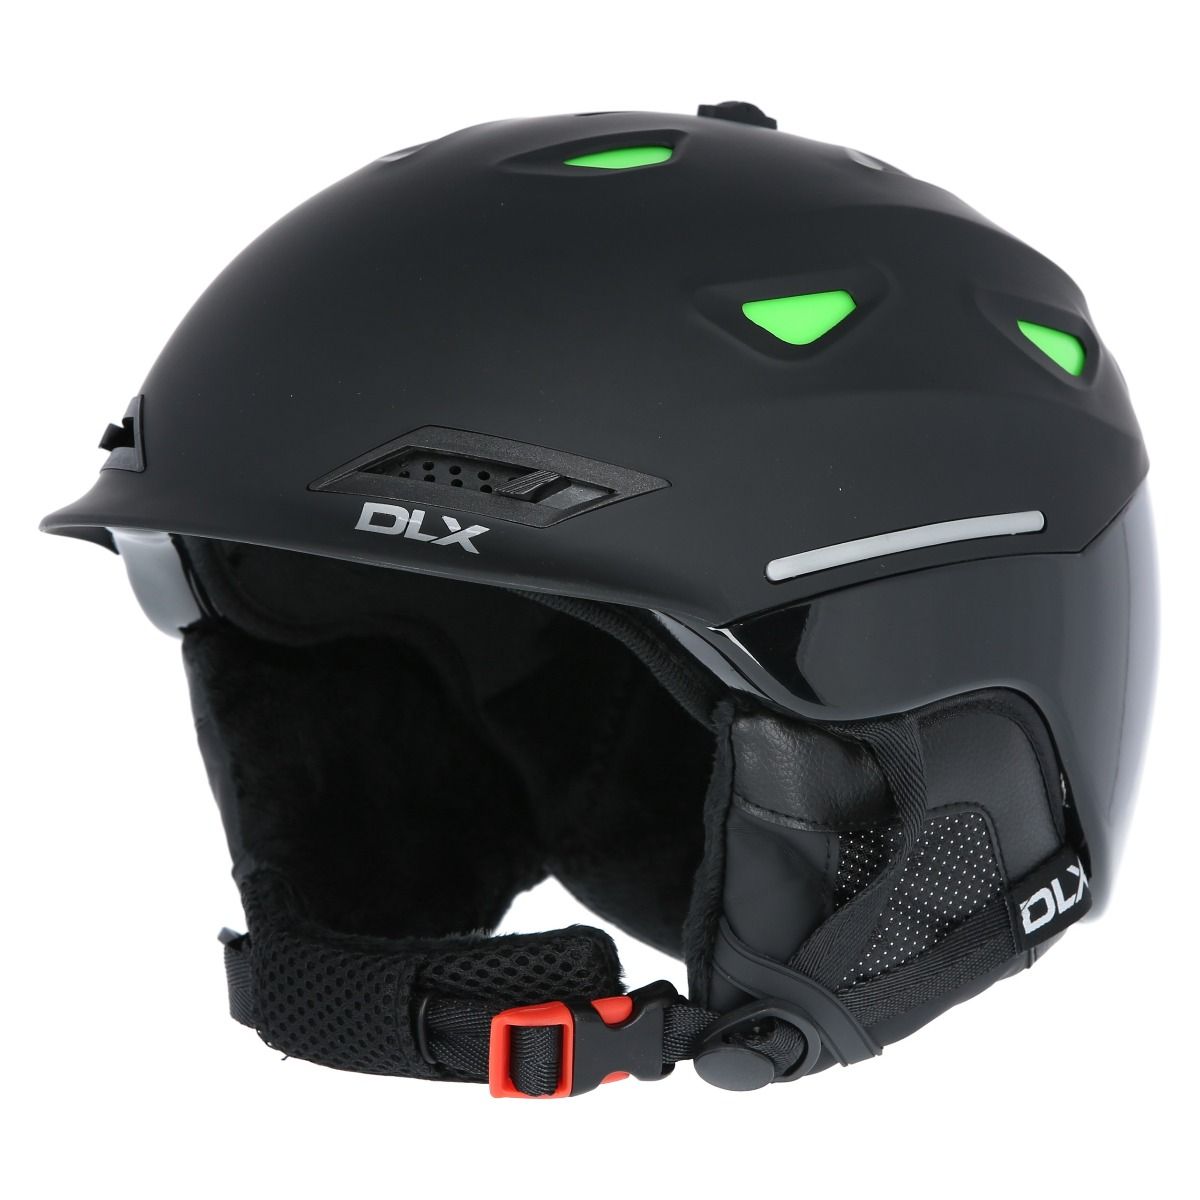 Renko Dlx Adults Ski Helmet